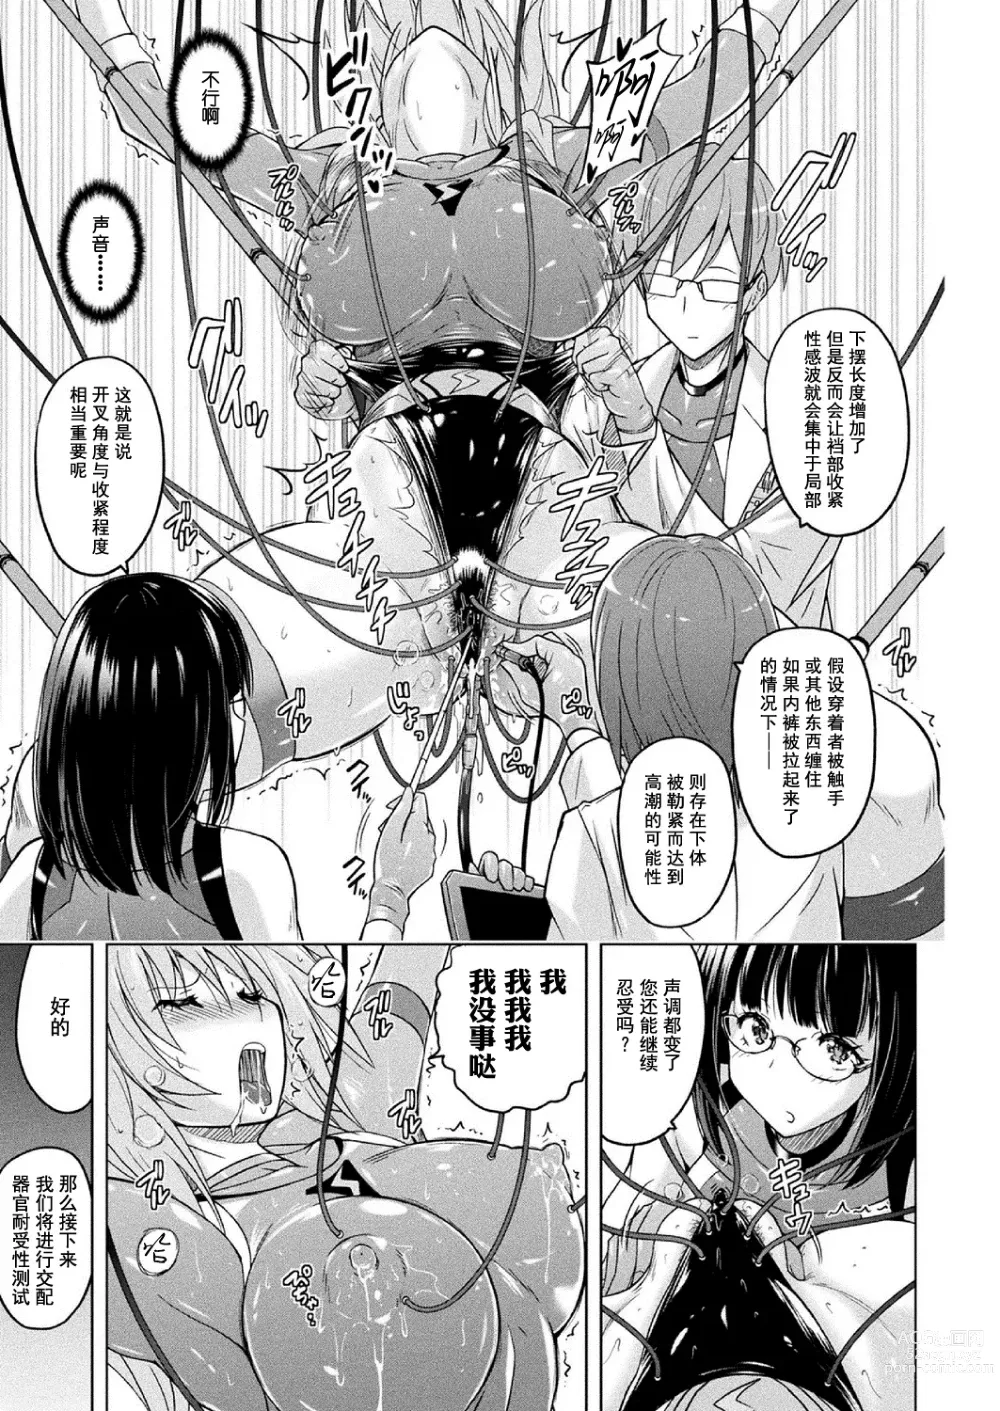 Page 10 of manga 胖次实验室 正篇+加笔【精神胡萝卜尚西·尚特耐脑控汉化】